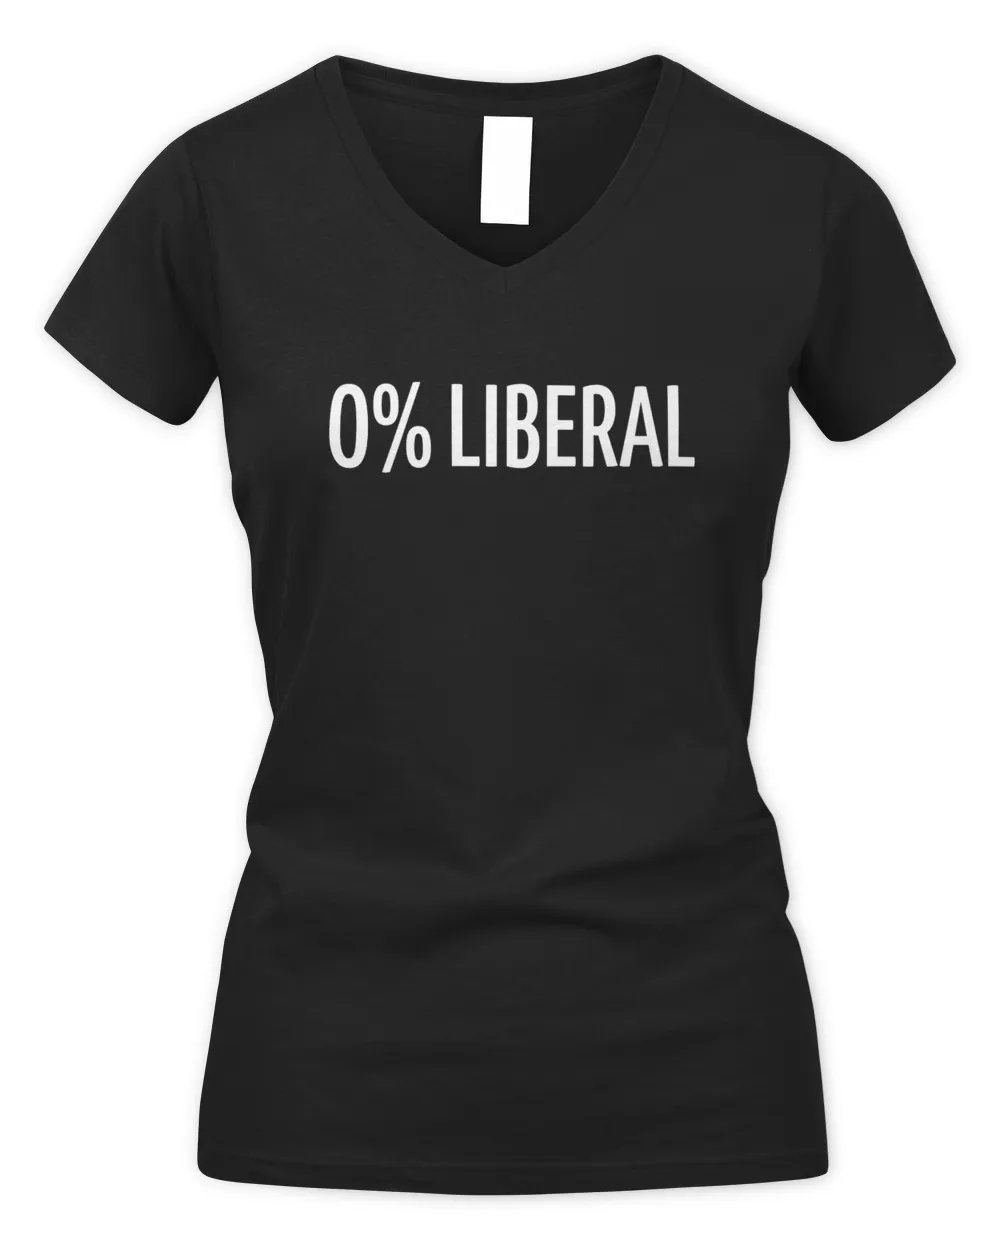 Zeekarkham Wearing 0% Liberal Shirt